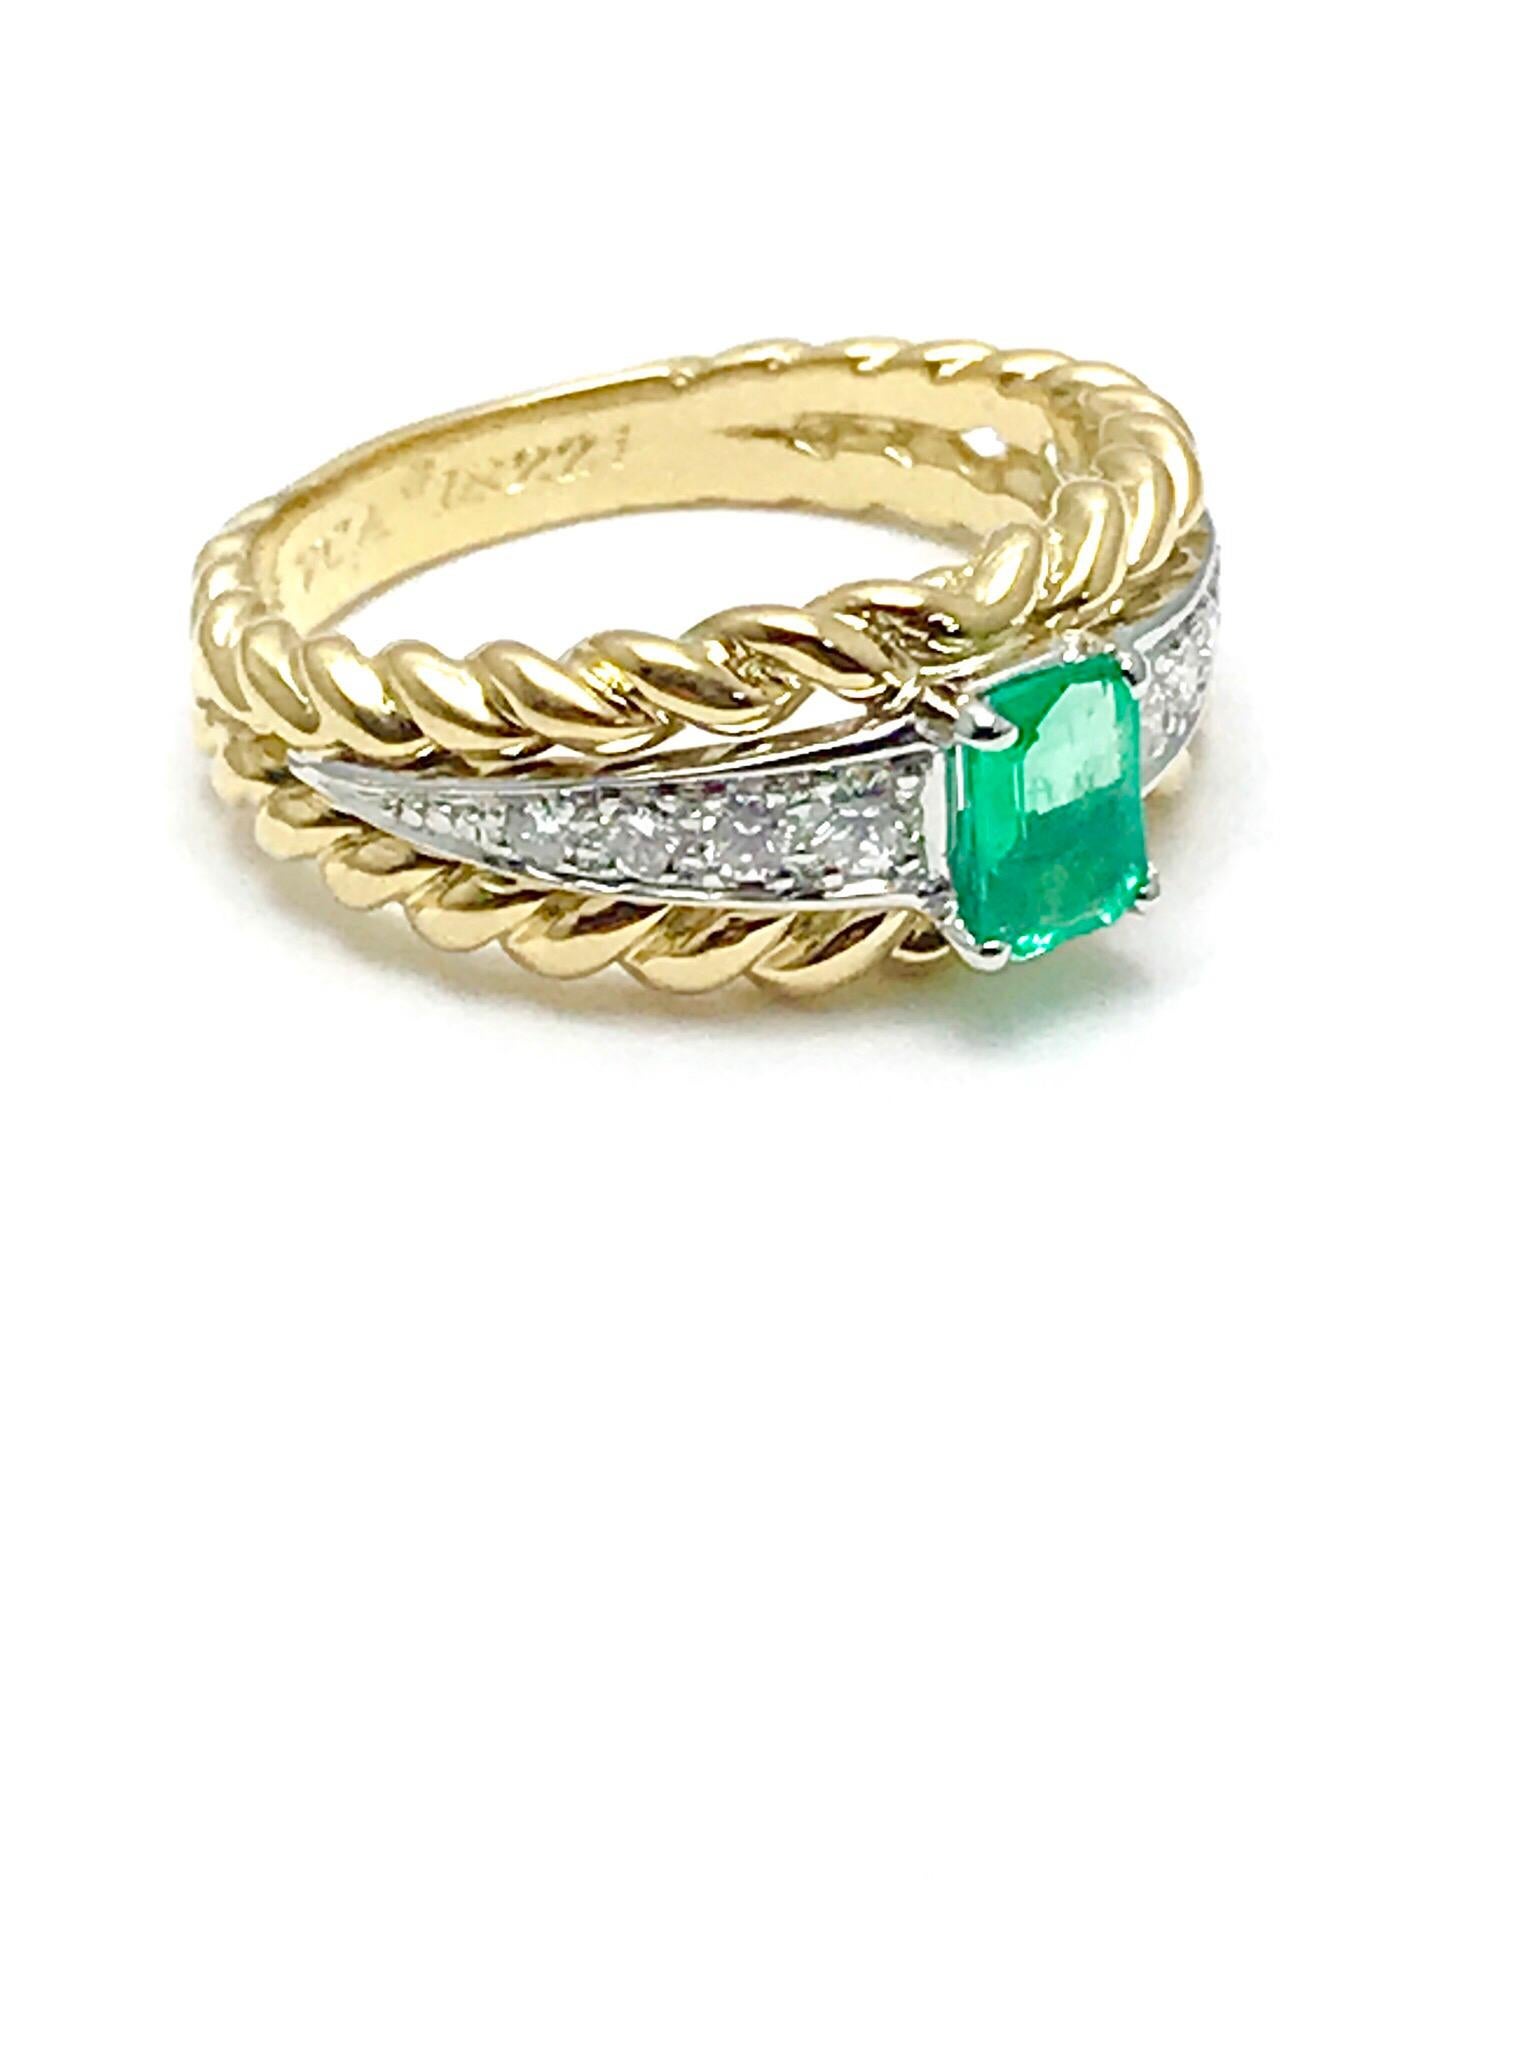 emerald ring van cleef